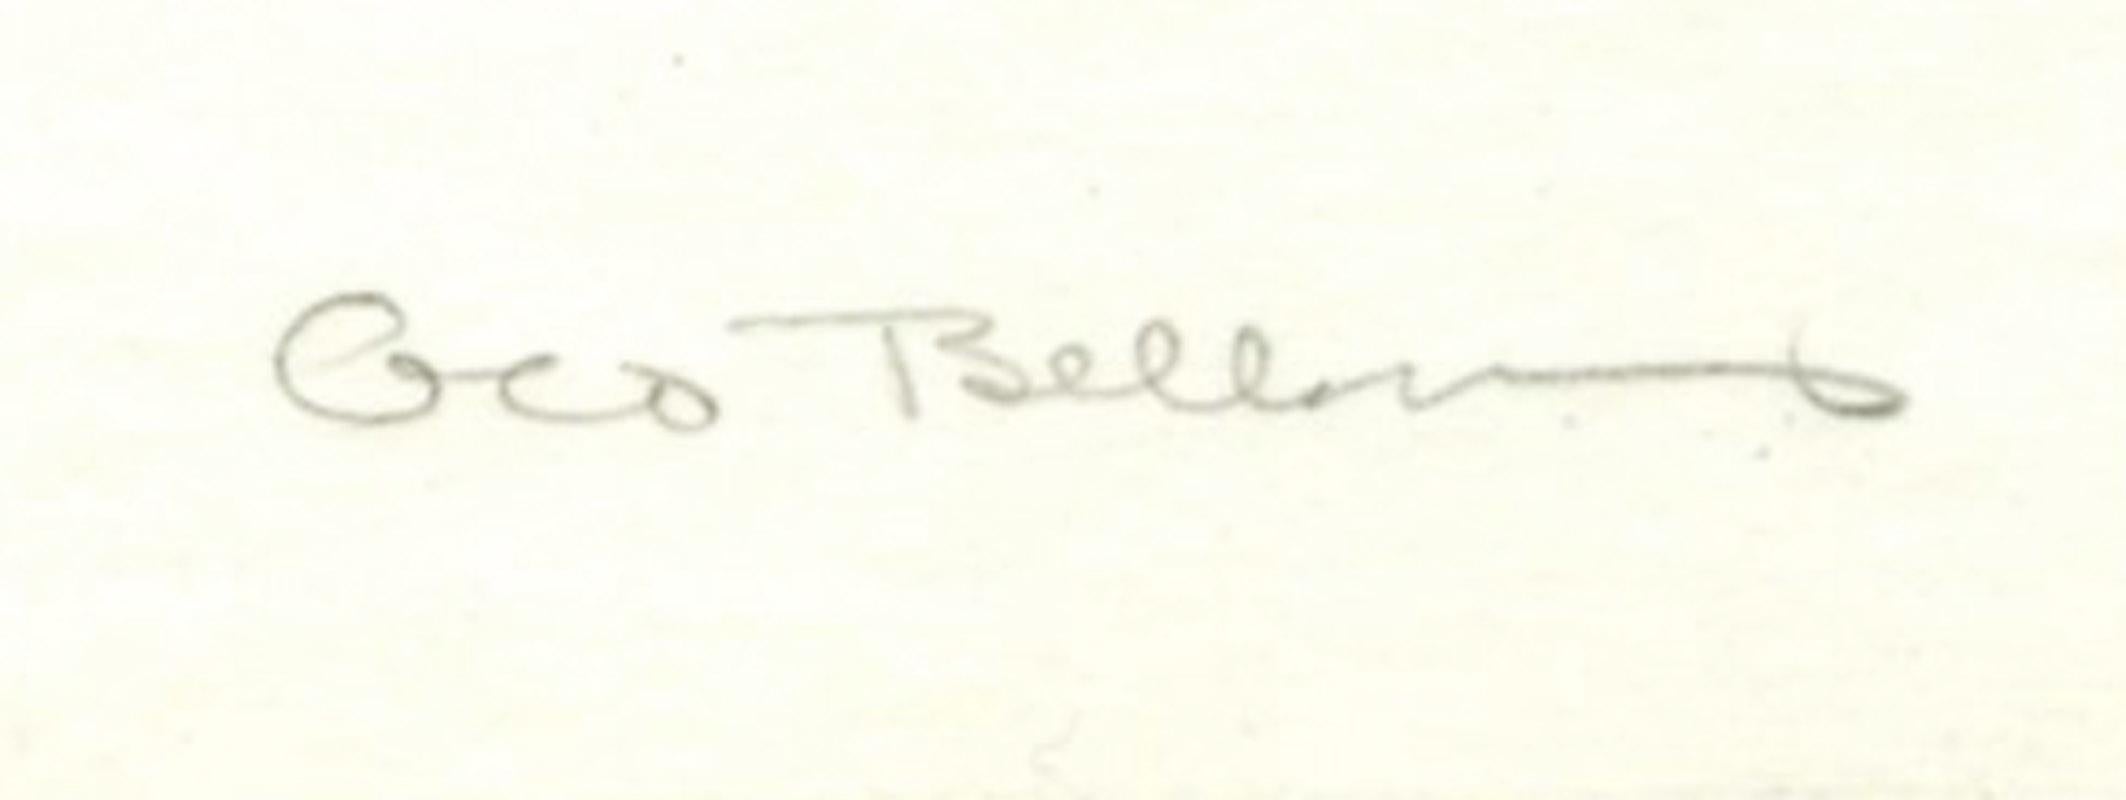 Skizze von Anne
Lithographie, 1923-1924
Signiert und betitelt vom Künstler, signiert von seinem Drucker Bolton Brown
Auflage: 42
Gedruckt von Bolton Brown (siehe Foto seiner Unterschrift mit Bleistift)
Provenienz:
Frederick Keppel & Co, New York